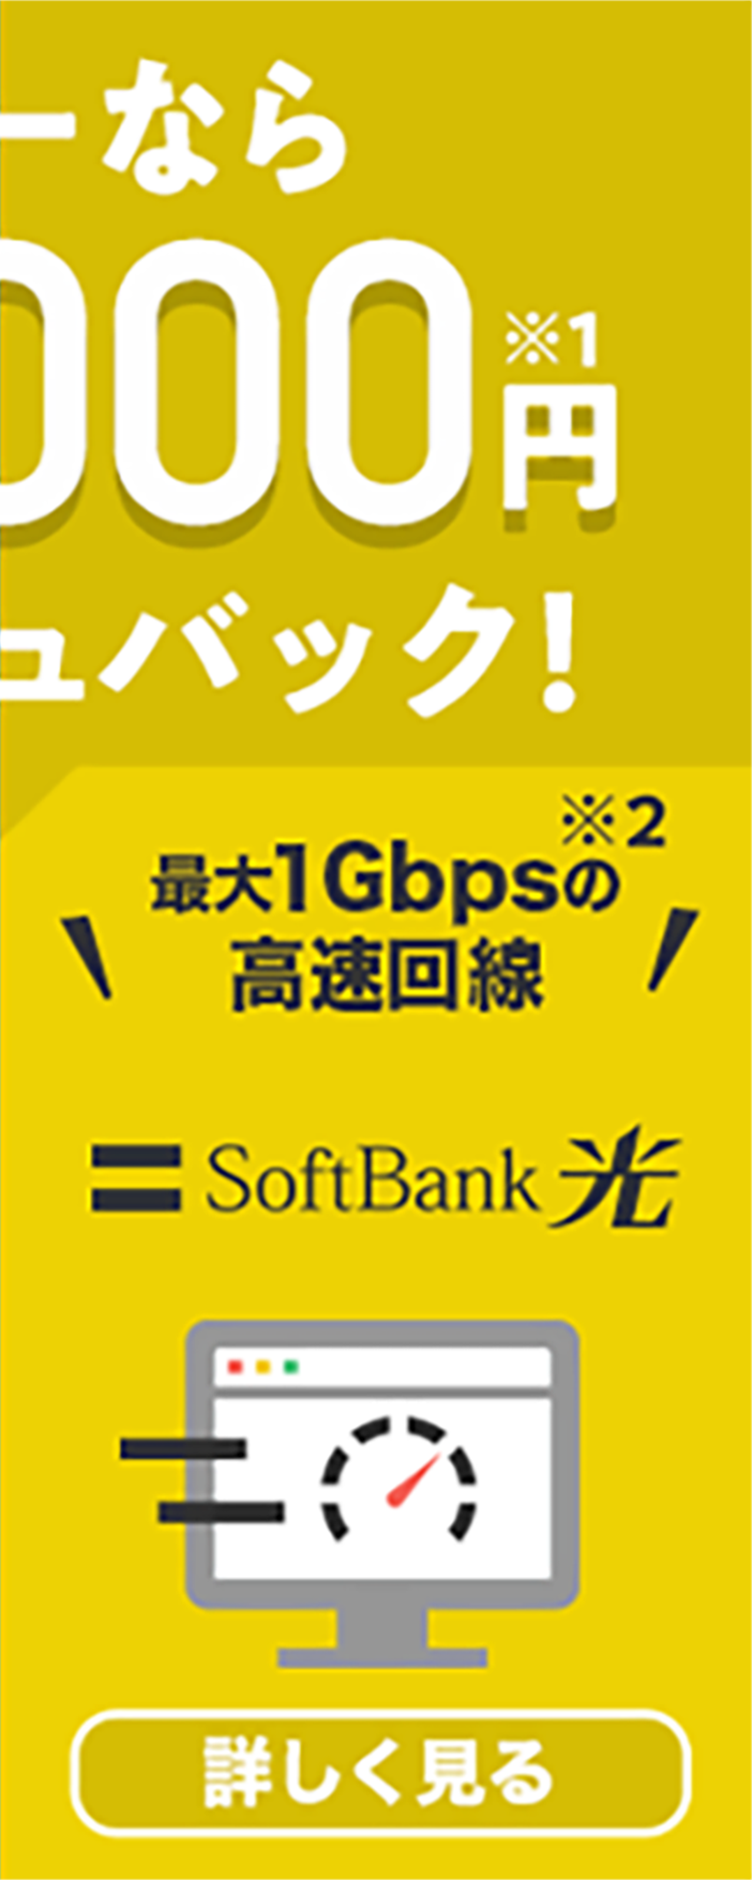 光回線 Softbank 光 ソフトバンク光 かんたんwi Fi Softbank Air ソフトバンクエアー Adsl Yahoo